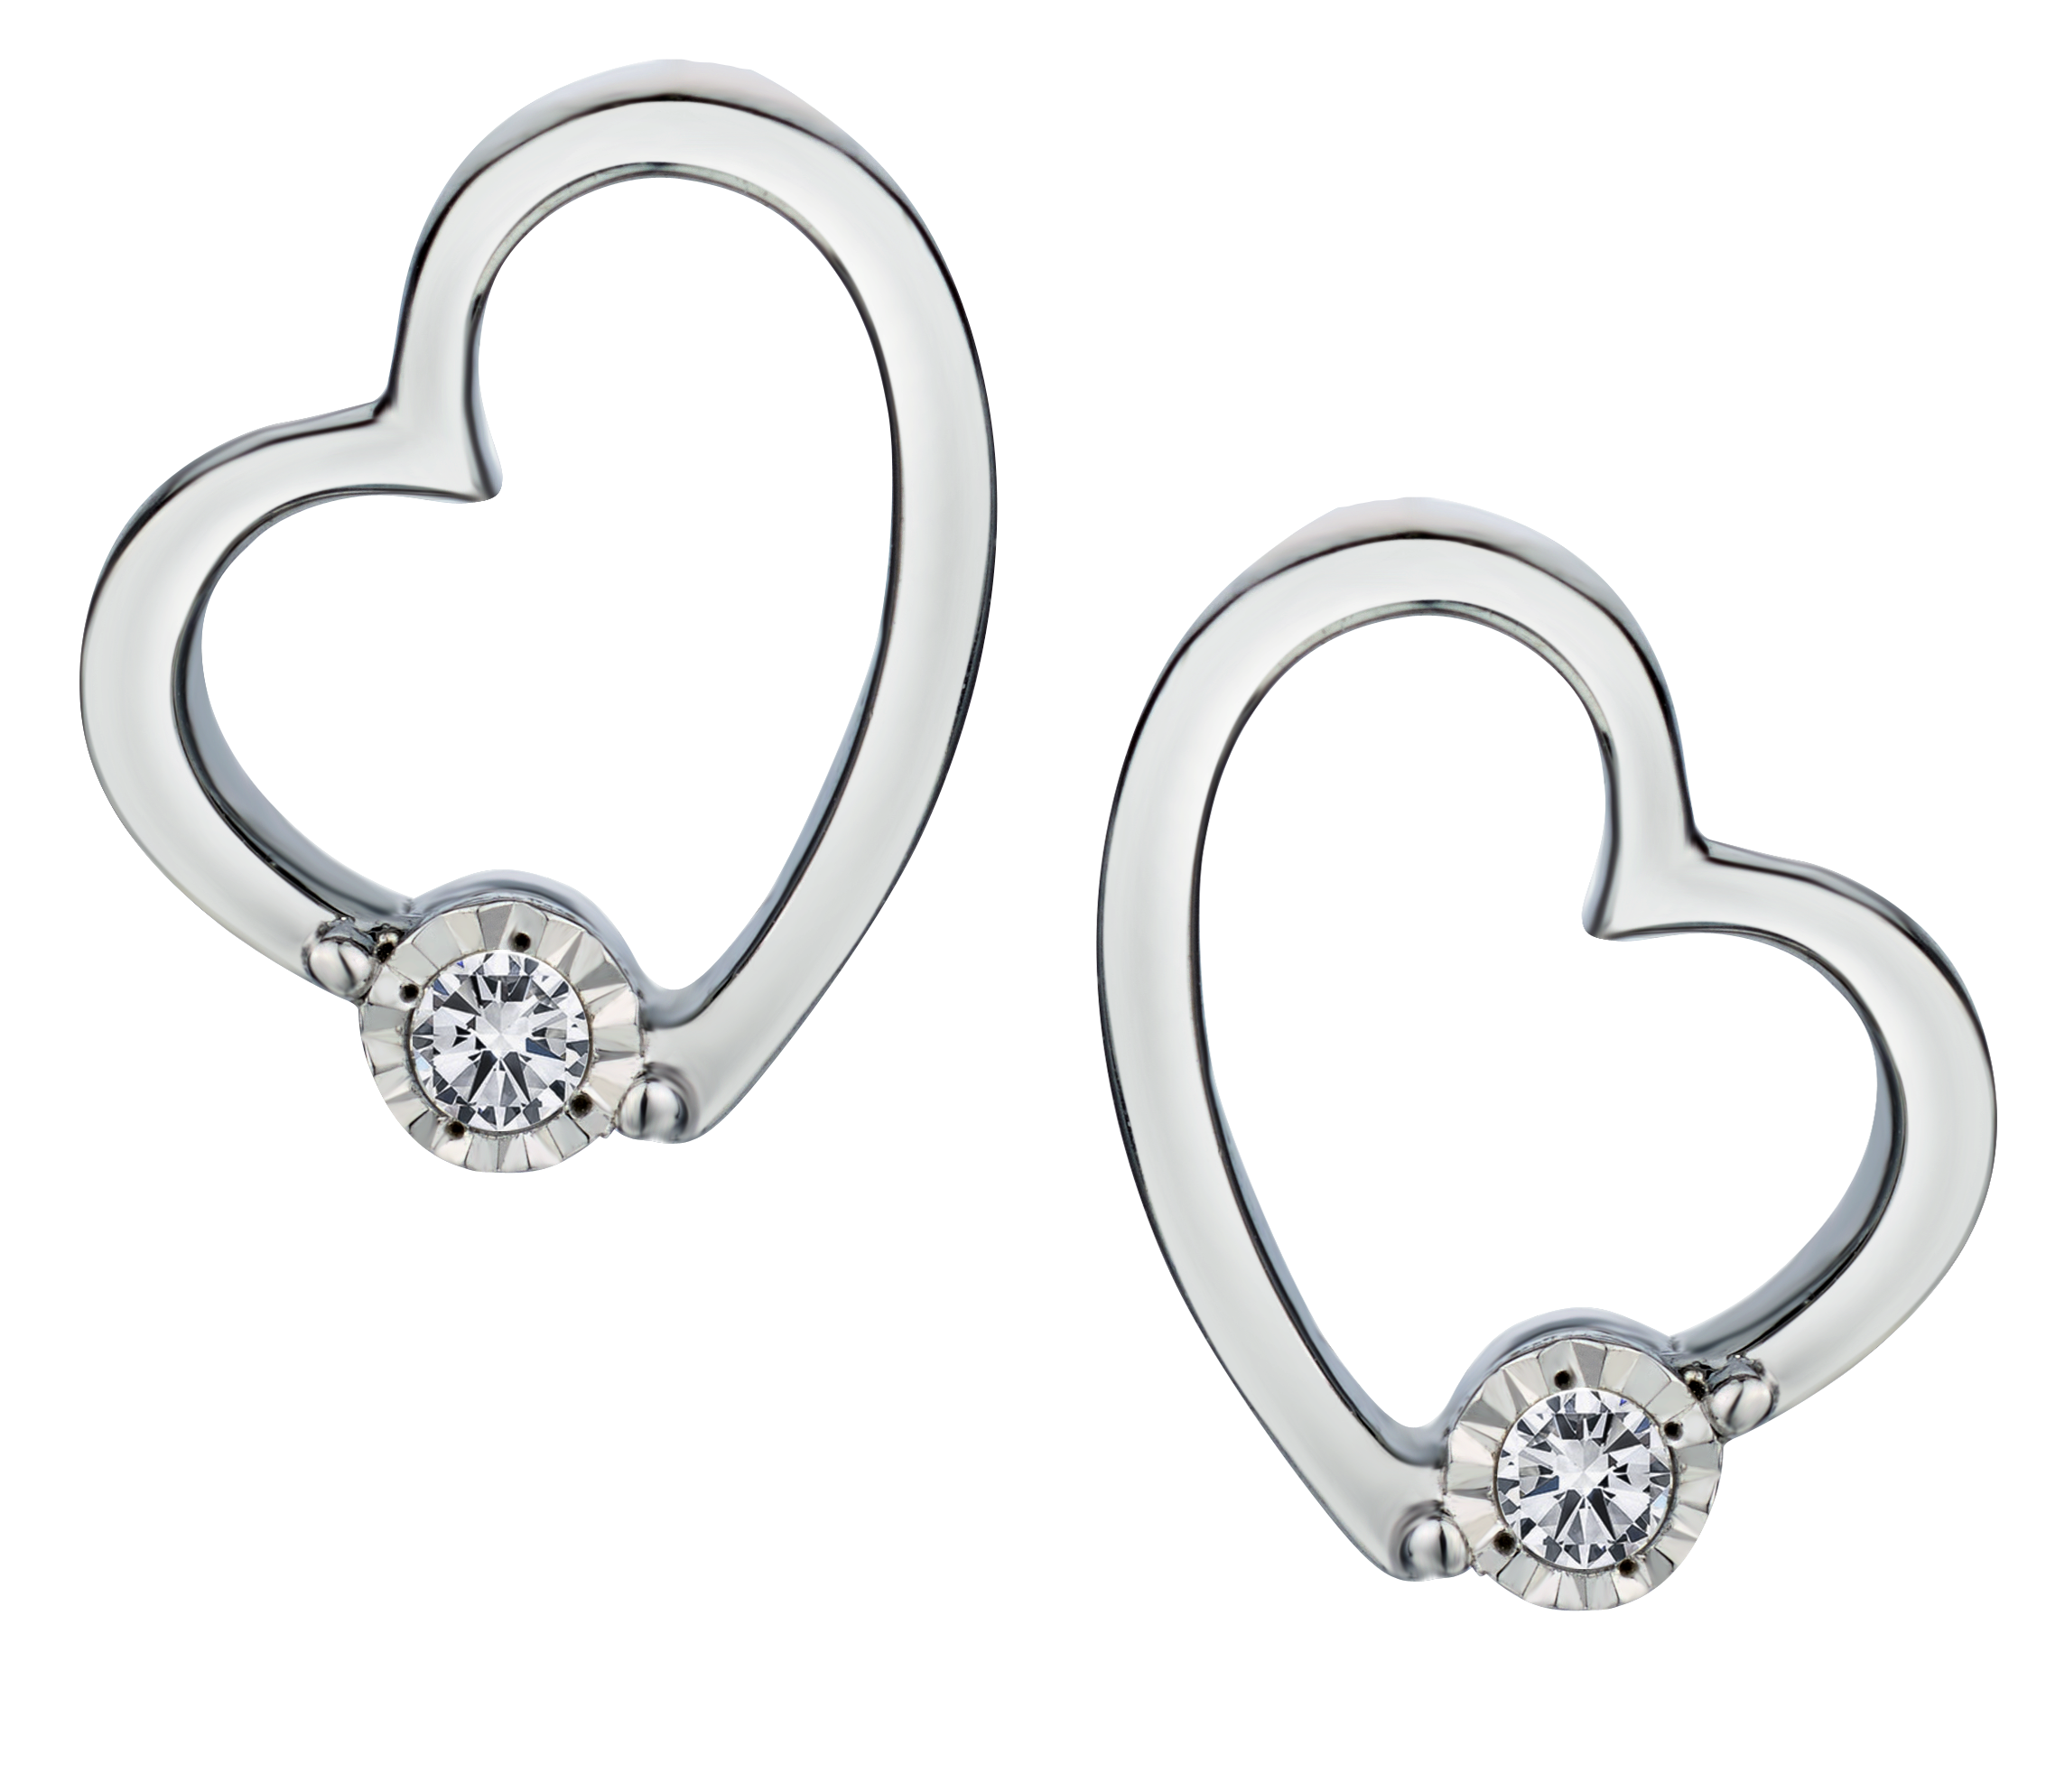 .06 Carat of Lab Grown Diamonds "Heart" Earrings, Silver